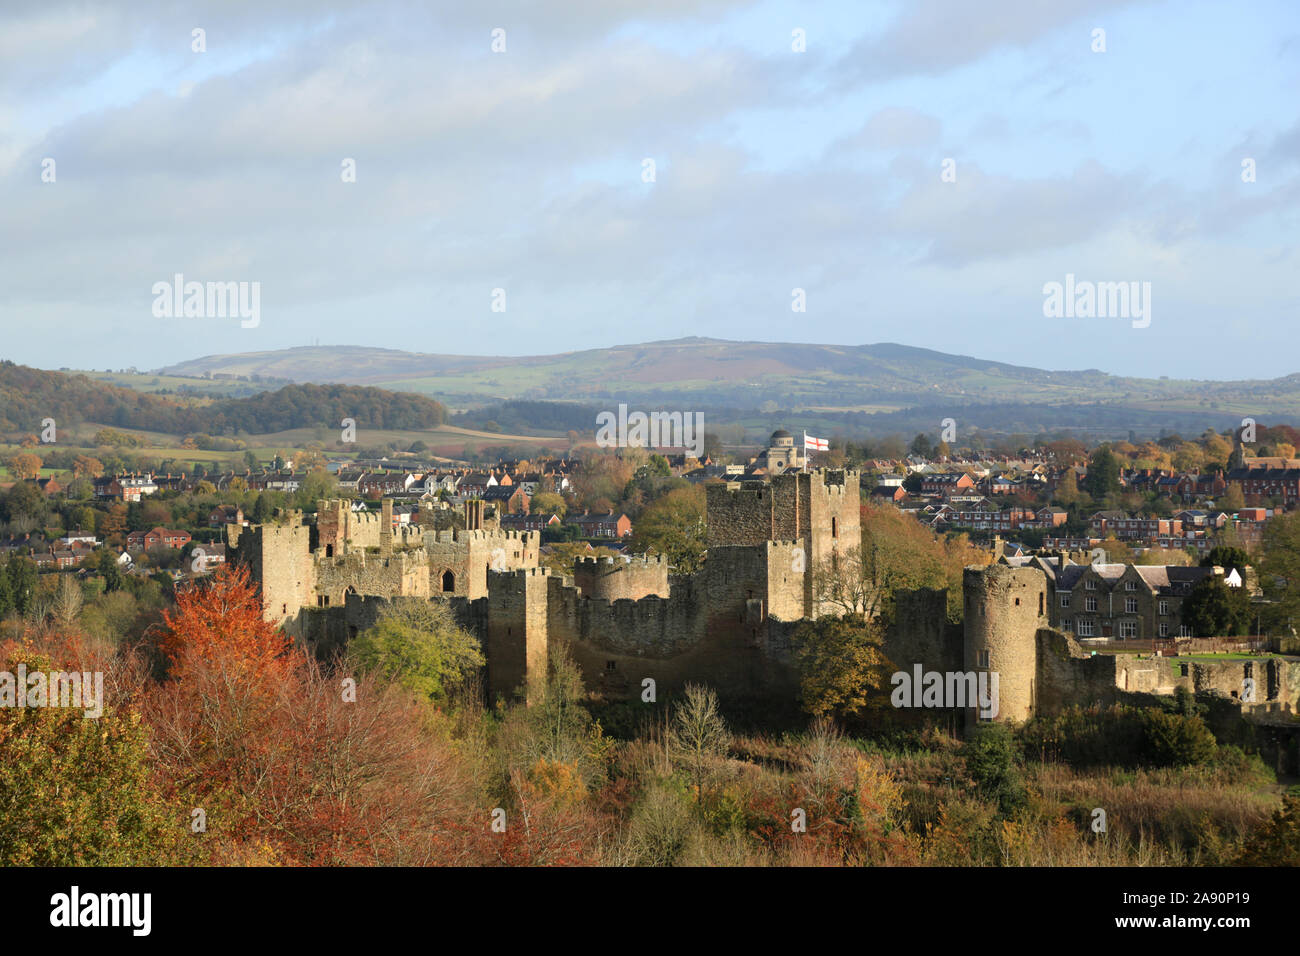 Le château de Ludlow, Shropshire, England, UK. Banque D'Images